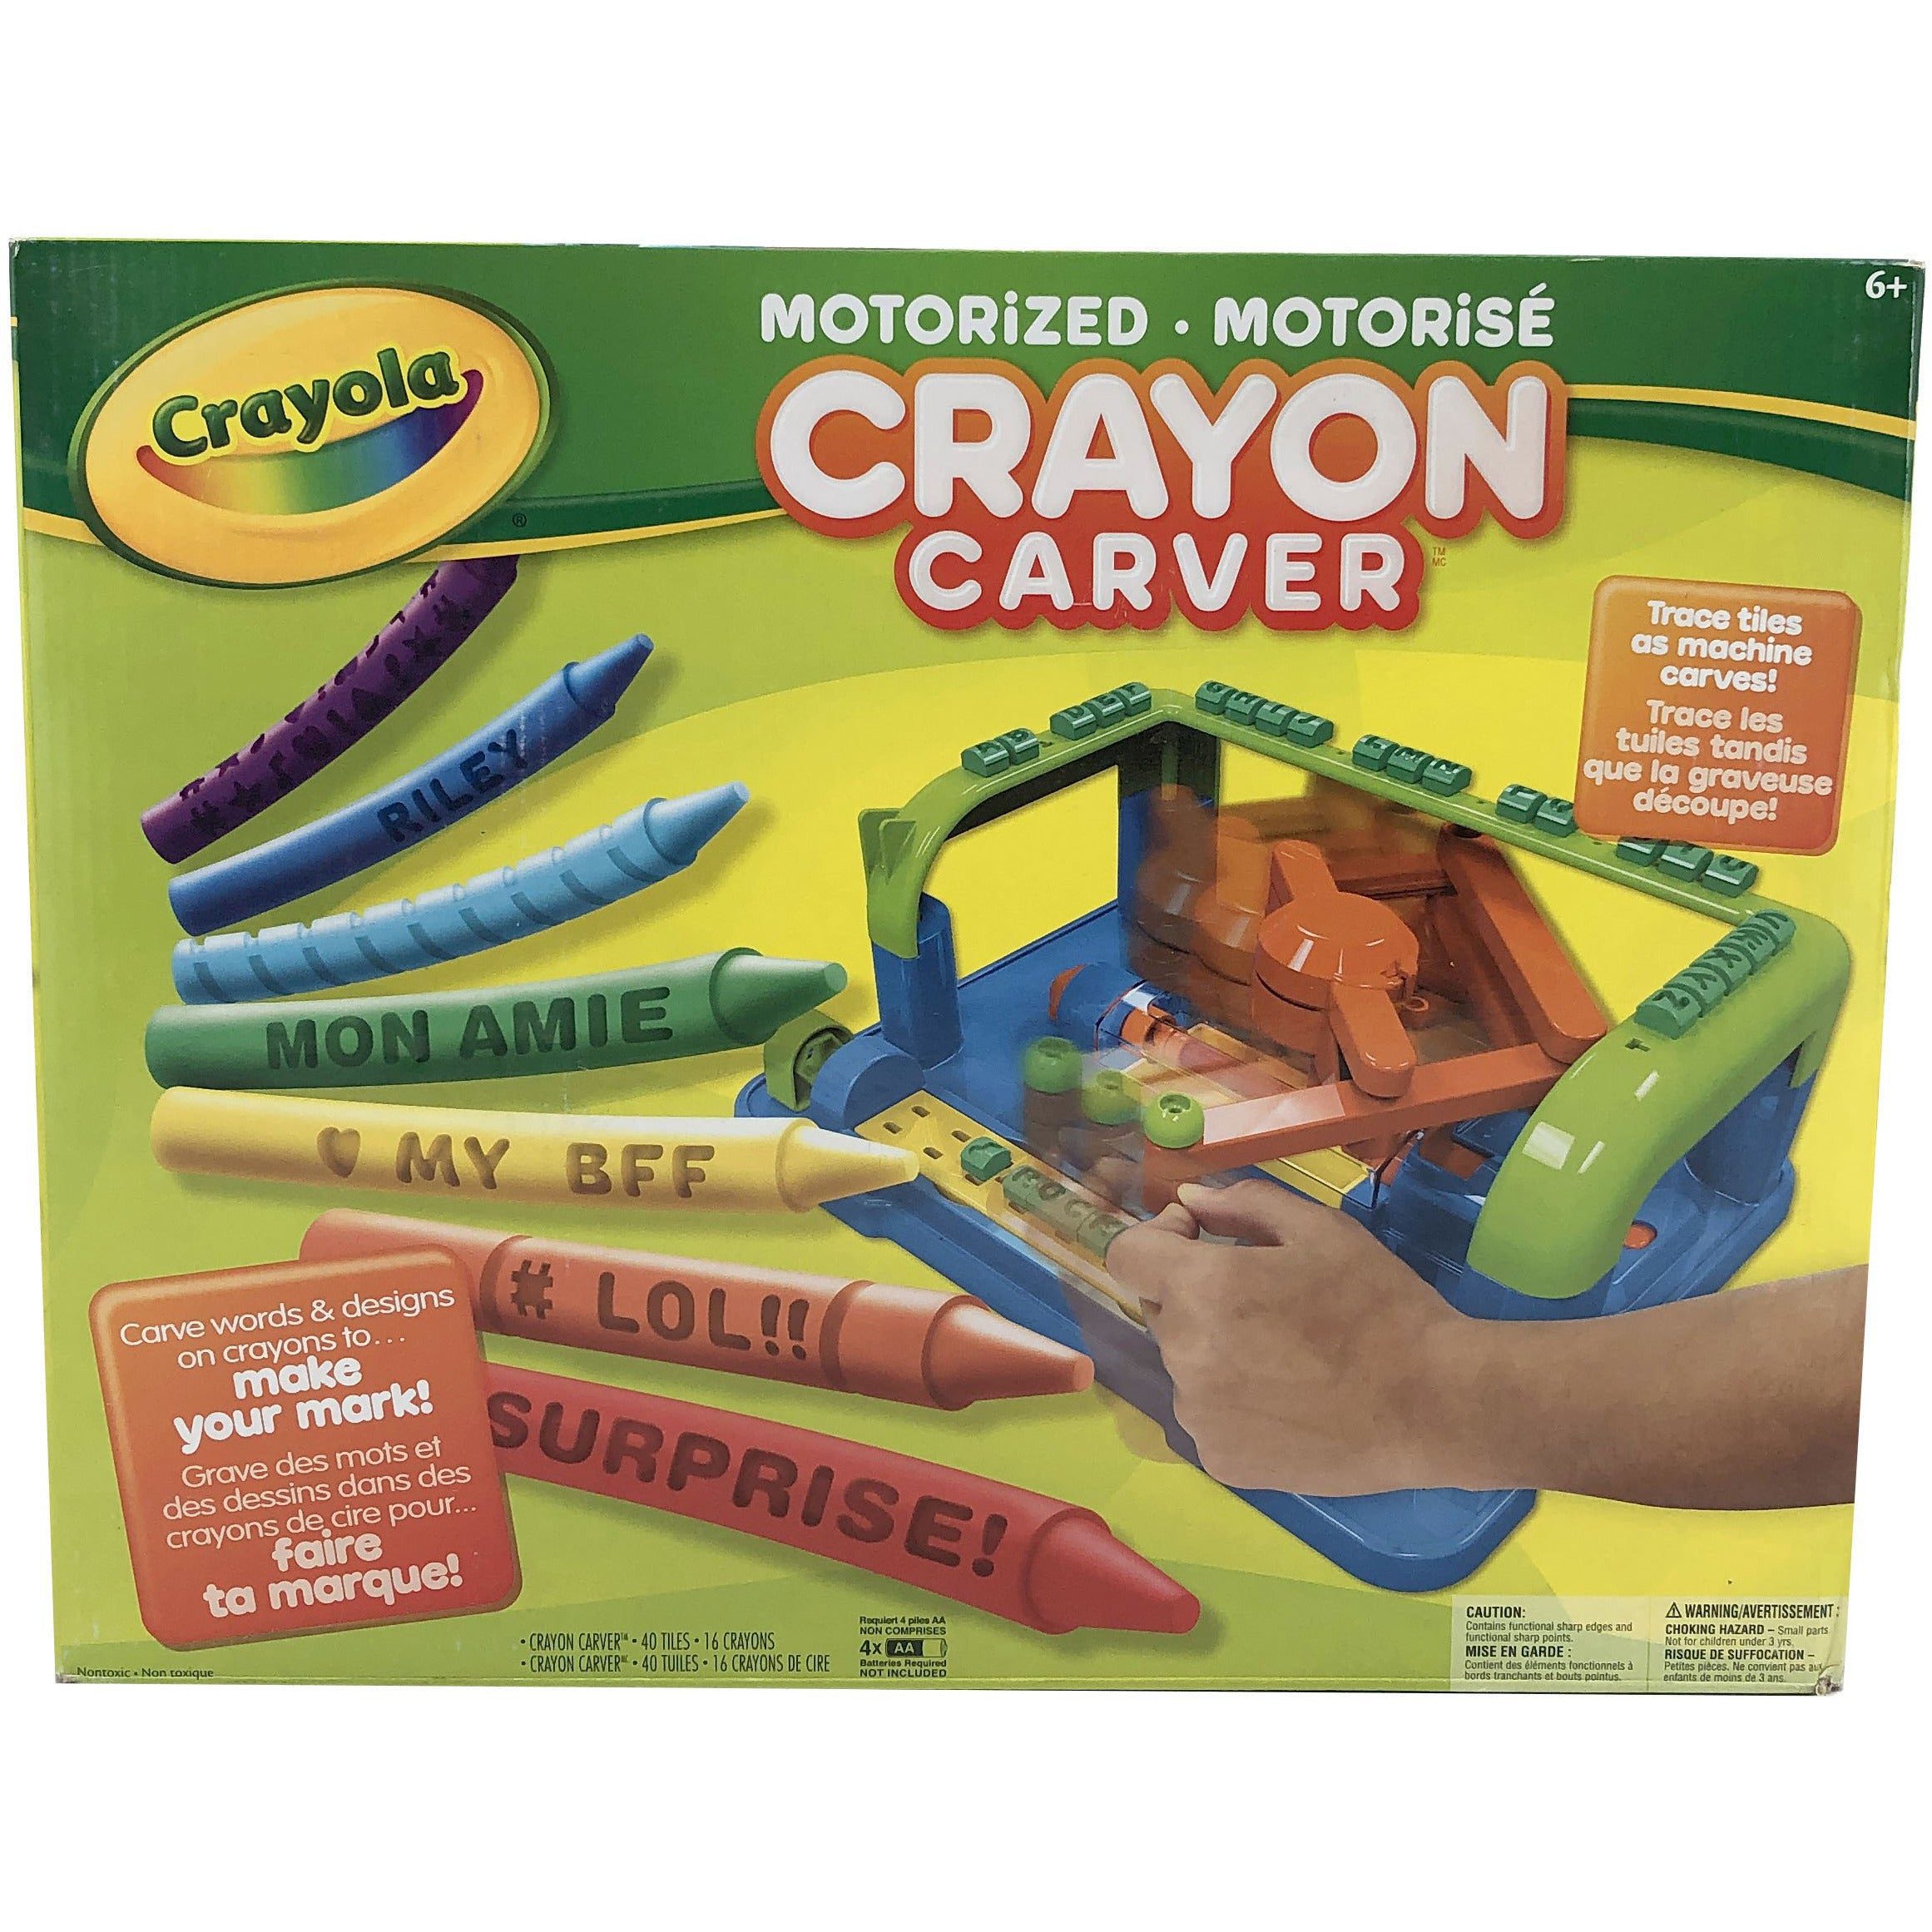 Crayola crayon carver machine